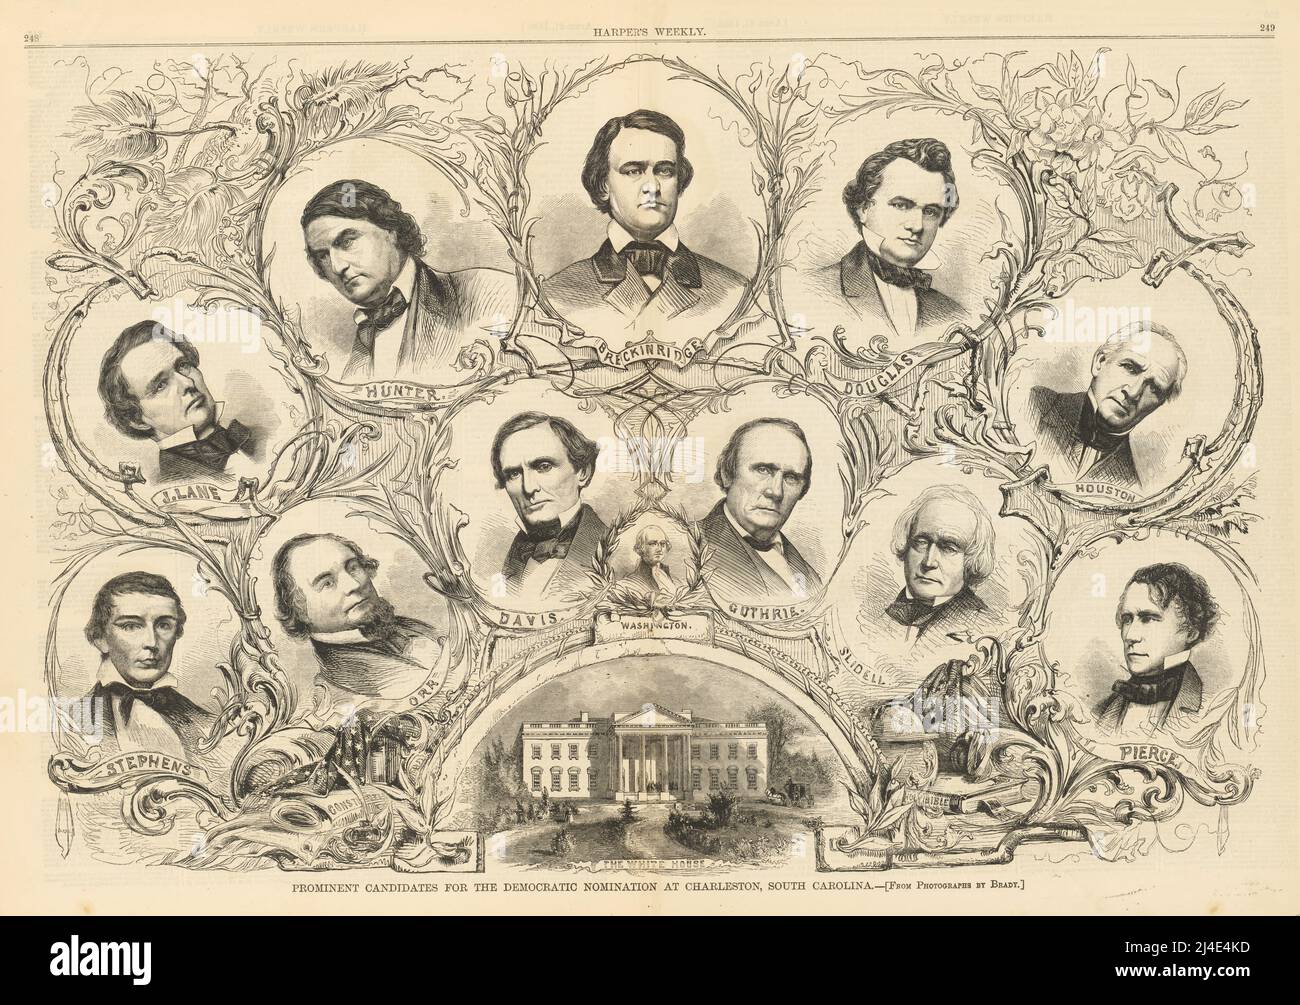 Prominente Kandidaten für die Demokratische Nominierung 1860 in Charleston, South Carolina Stockfoto